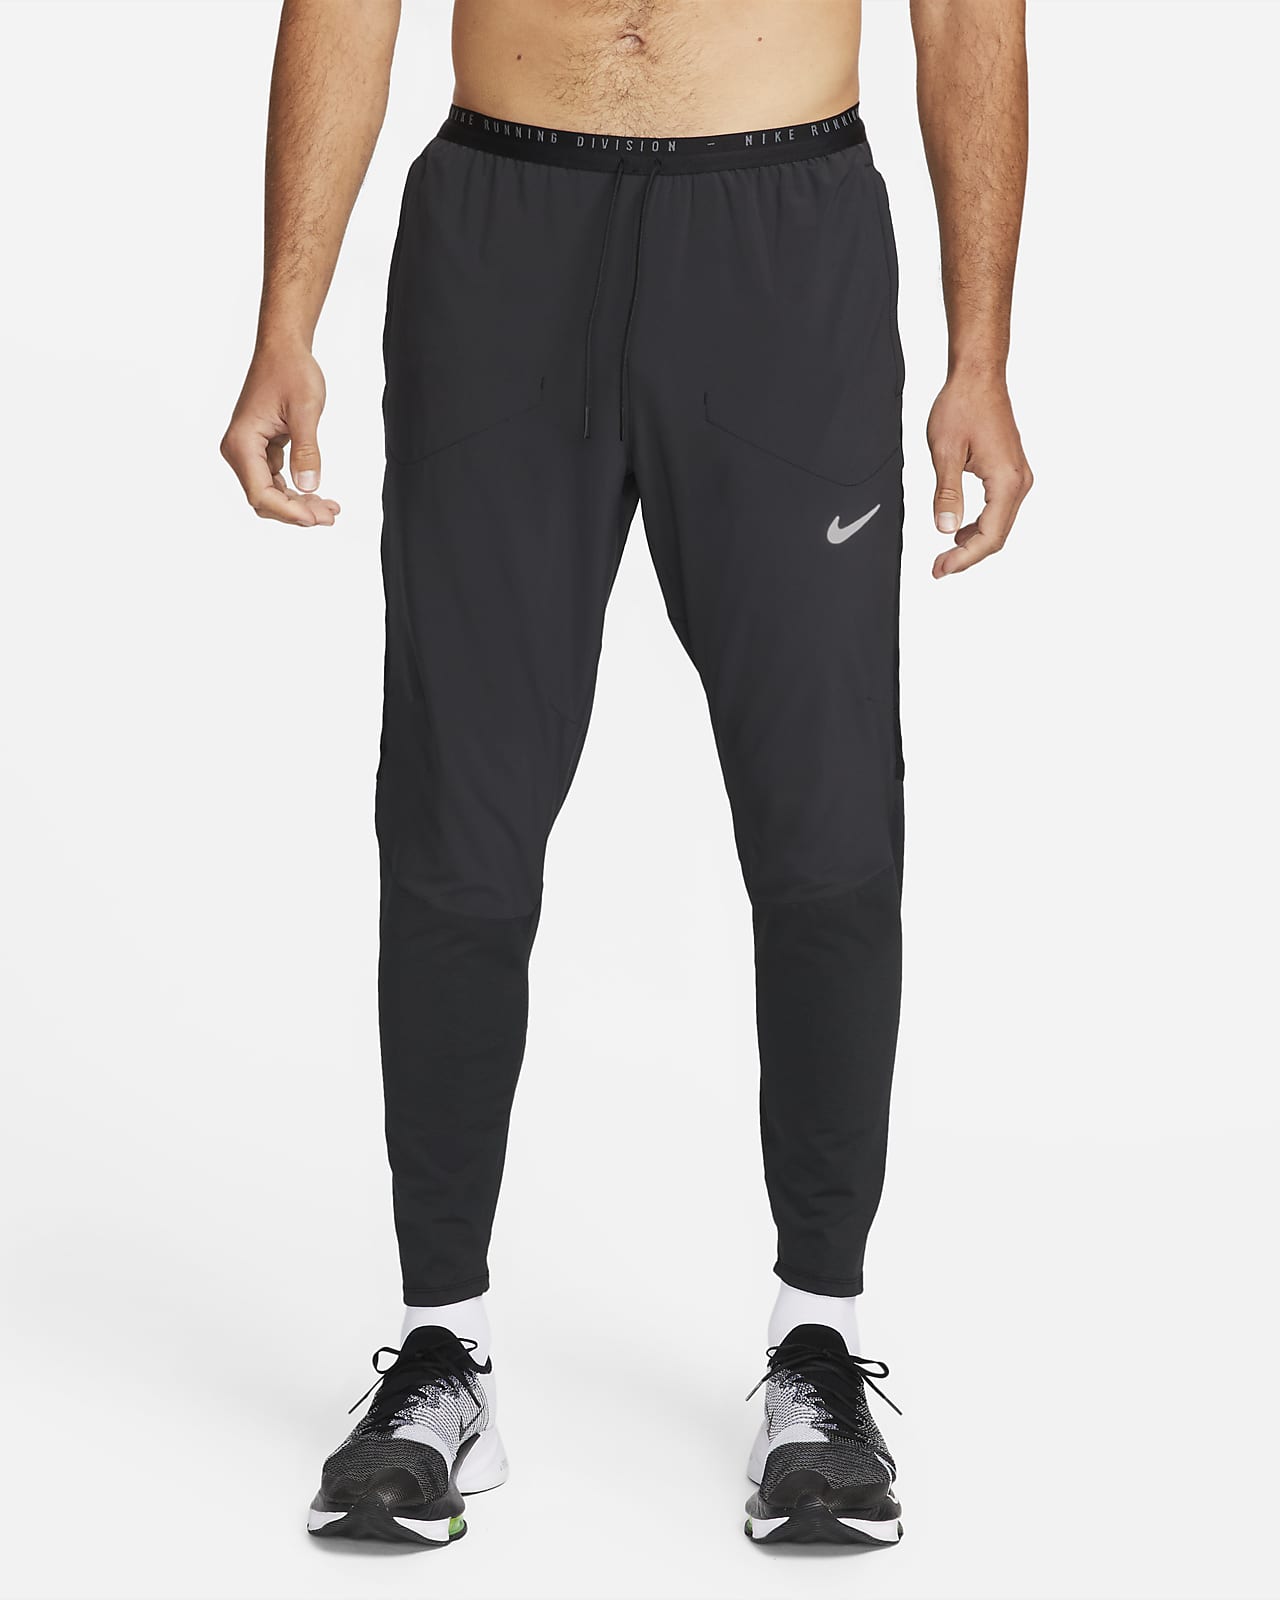 Ανδρικό υβριδικό παντελόνι για τρέξιμο Nike Dri-FIT Run Division Phenom